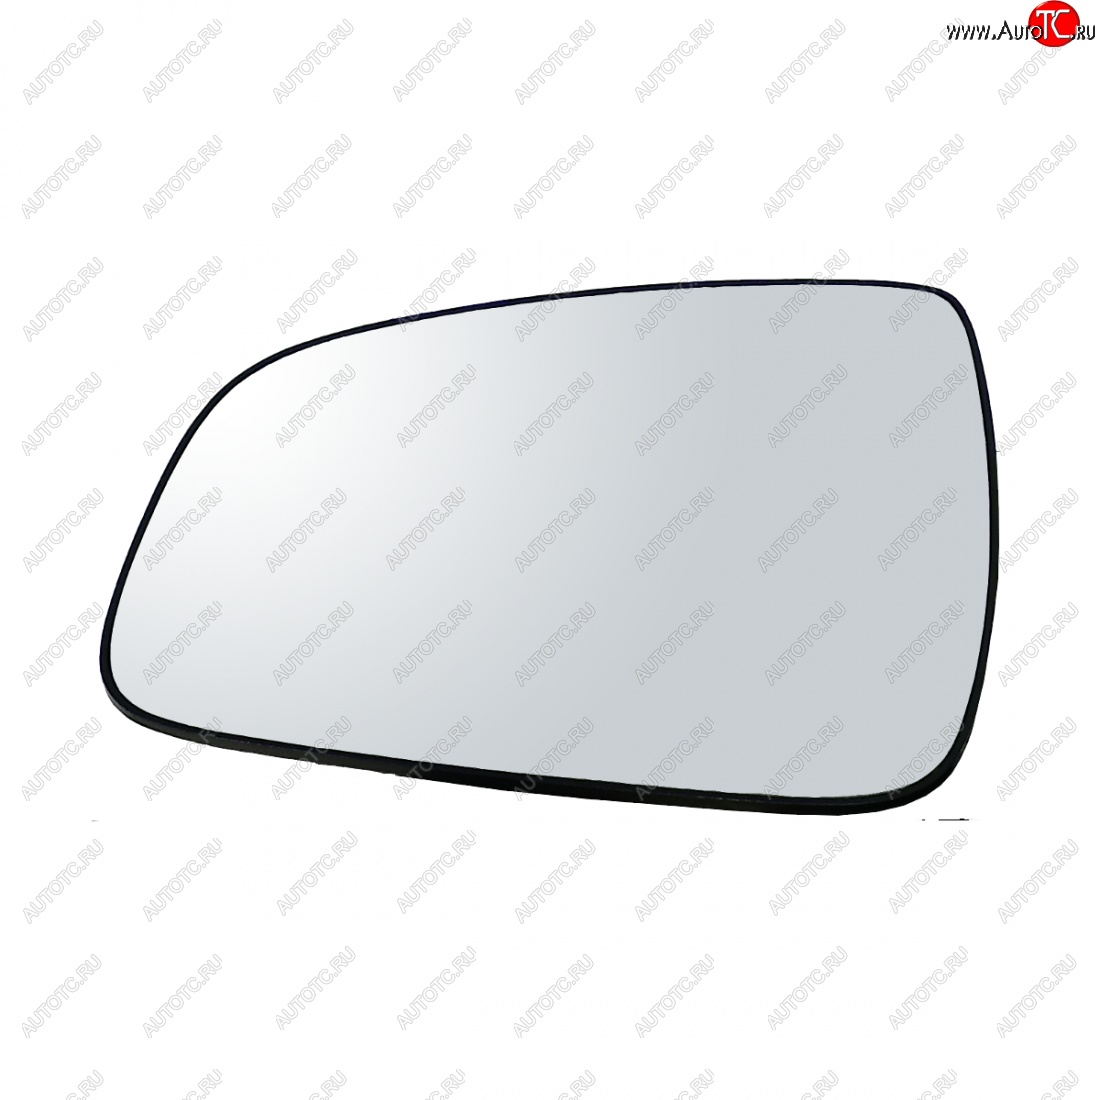 399 р. Левый зеркальный элемент (обогрев) Автоблик2 Nissan Terrano D10 дорестайлинг (2013-2016) (без антибликового покрытия)  с доставкой в г. Калуга